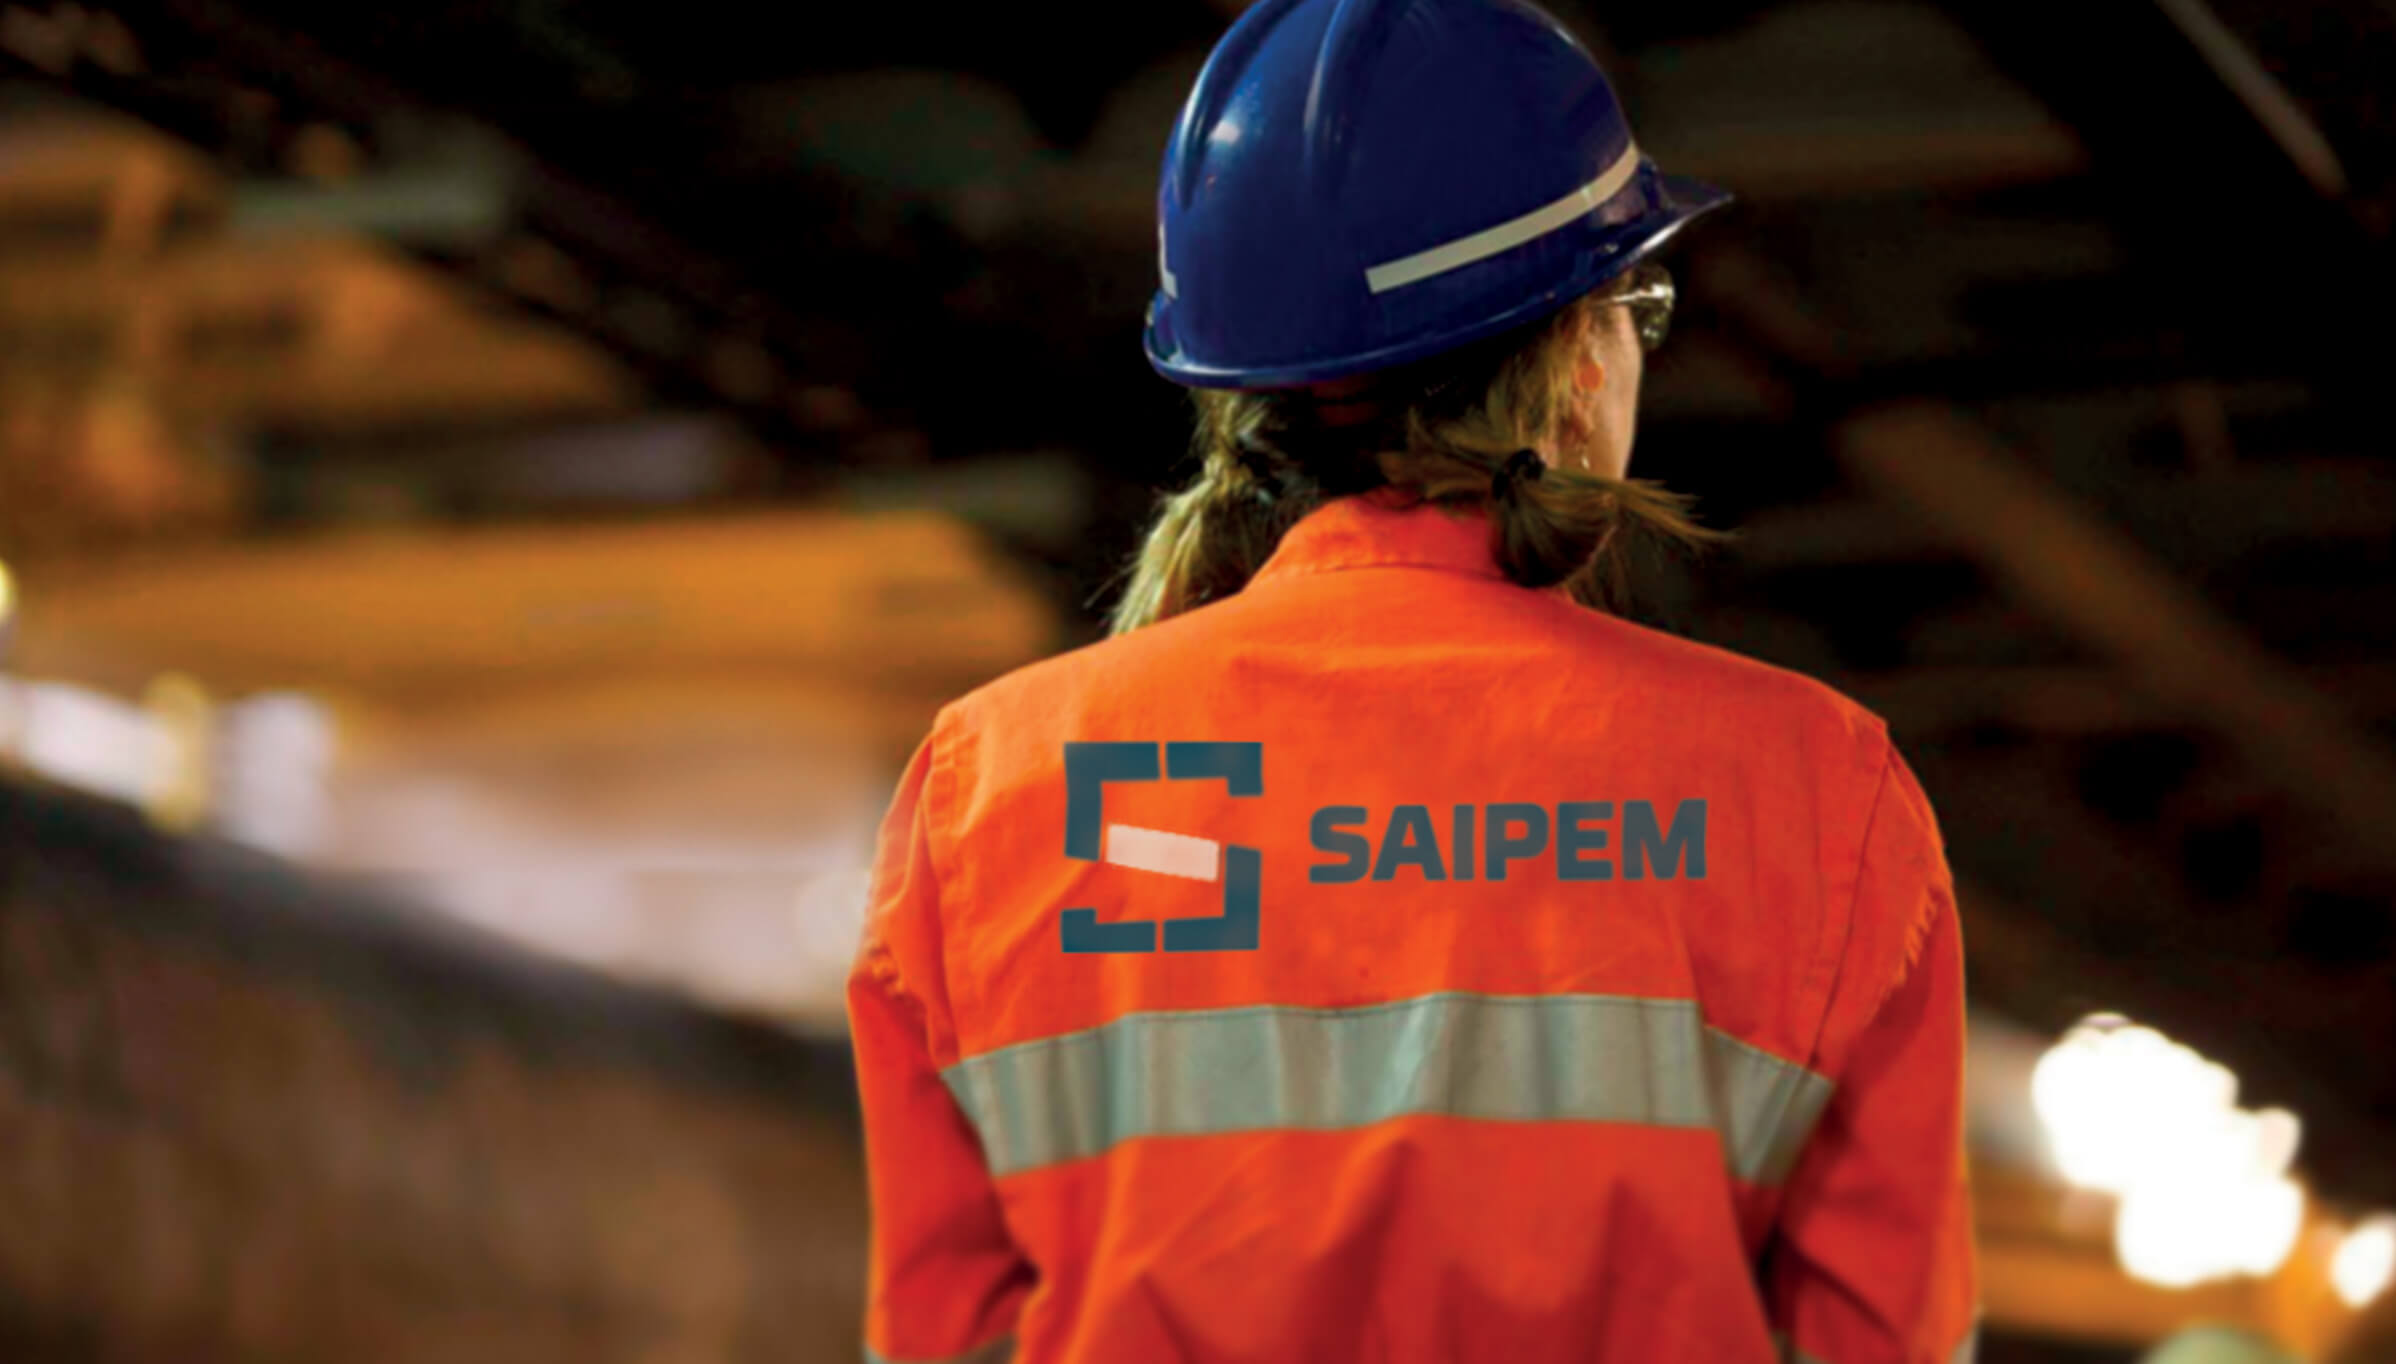 La société italienne de services à l'industrie énergétique Saipem a annoncé mercredi avoir obtenu de nouveaux contrats de forage offshore, trois au Moyen-Orient et deux en Afrique de l'Ouest, d'une valeur totale d'environ 800 millions de dollars.  